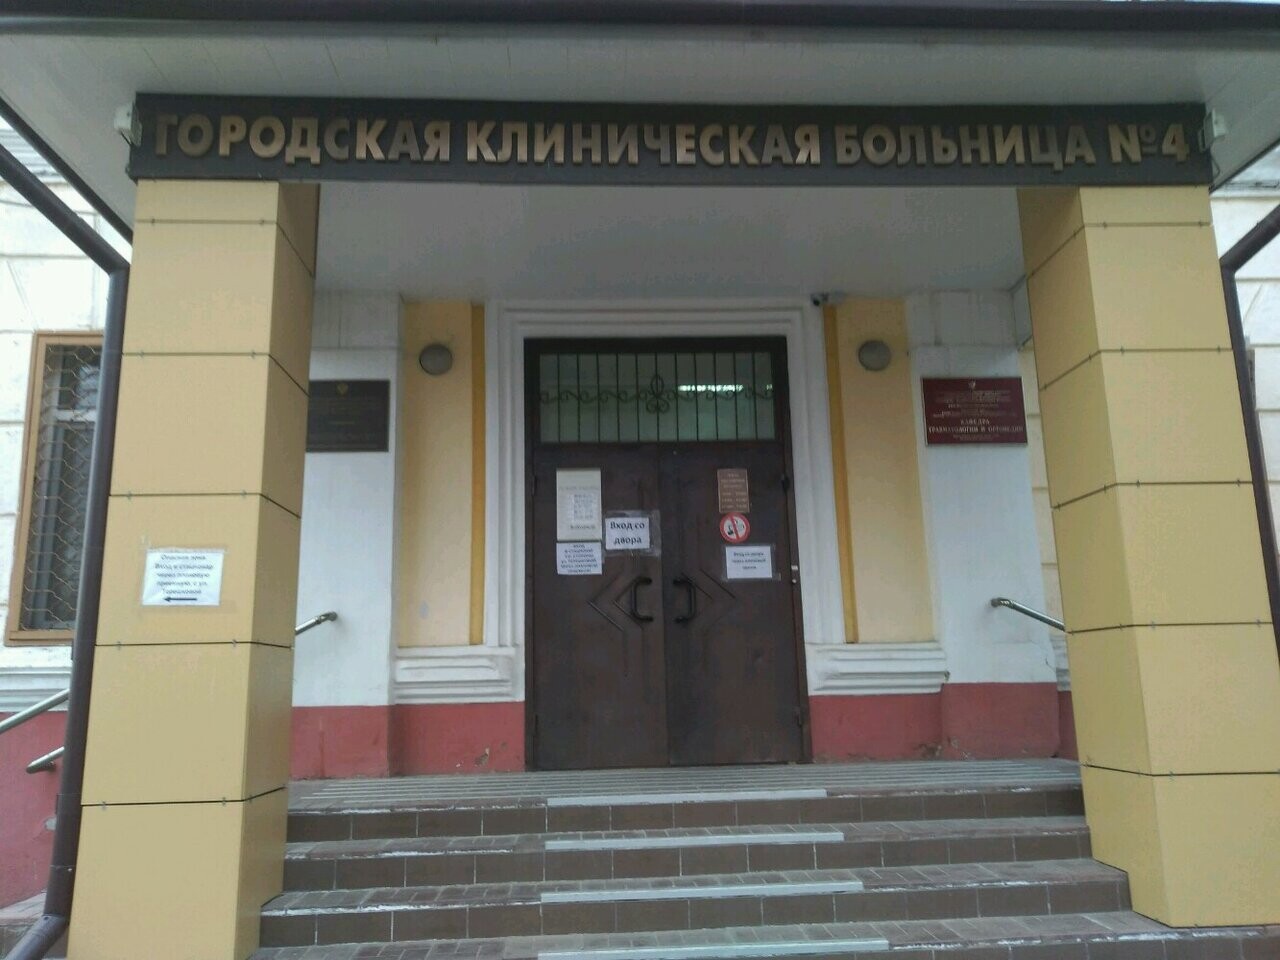 Оренбург клиническая больница 4